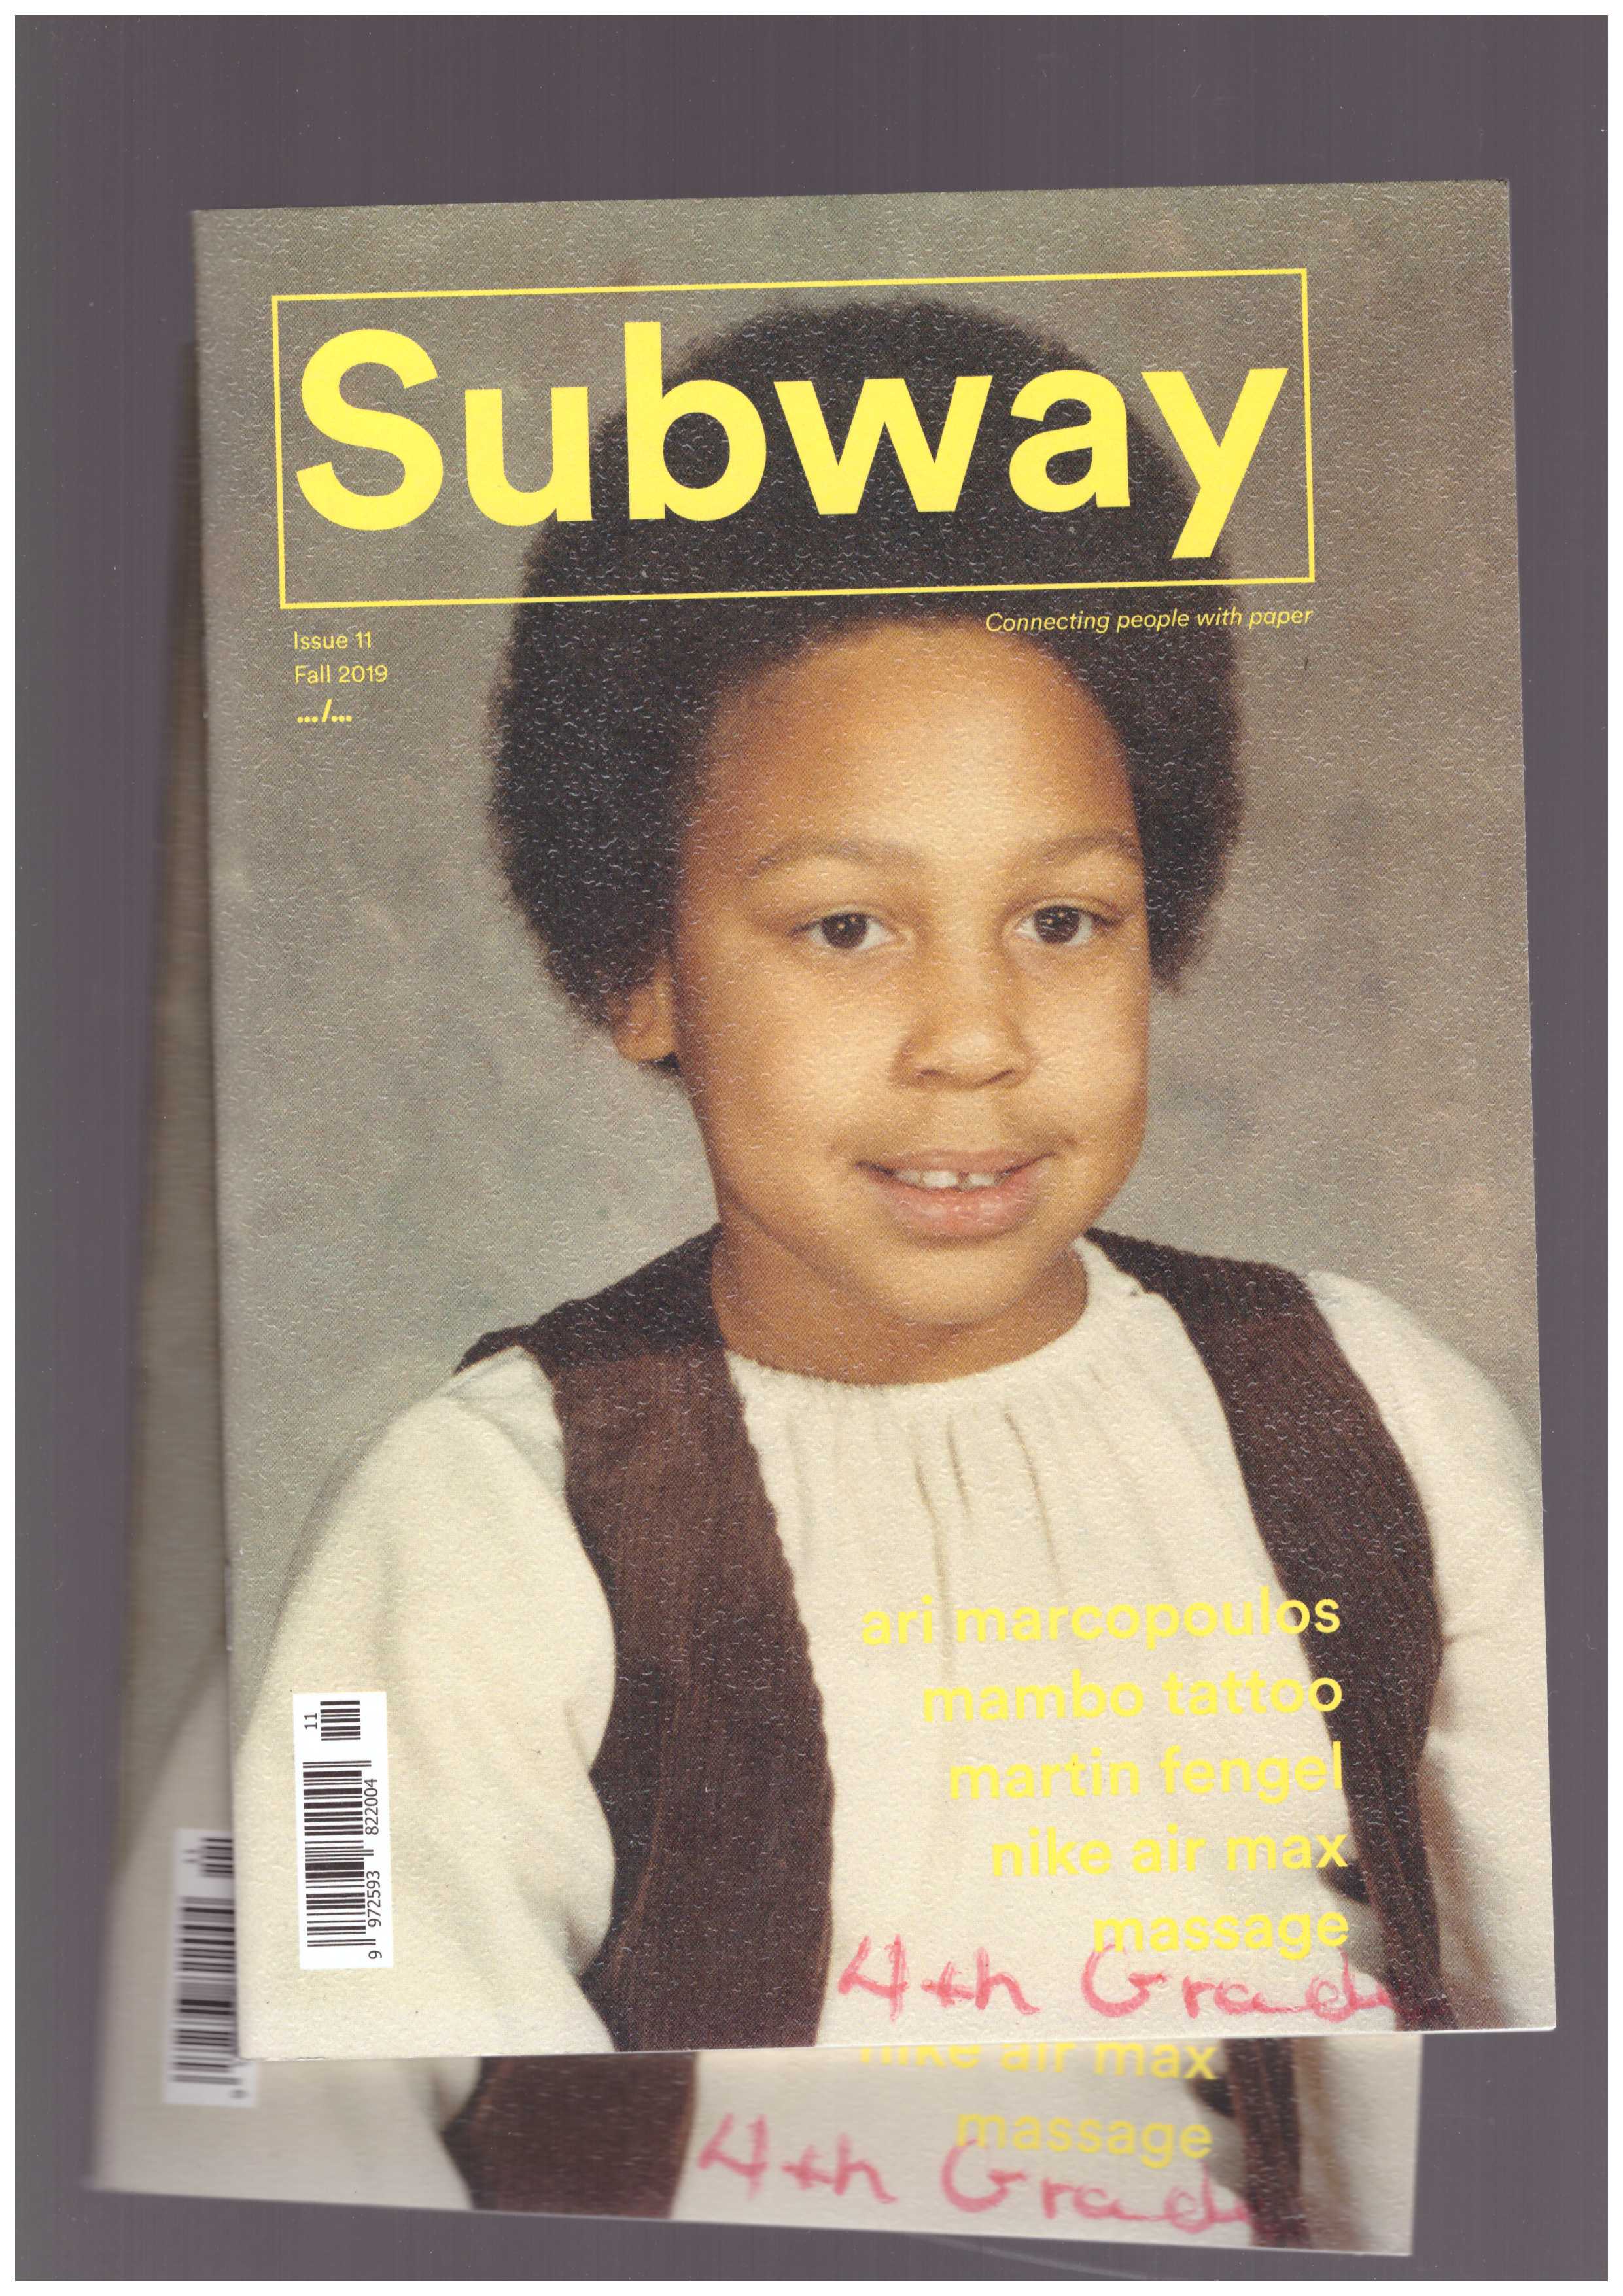 VAN DER WEIJDE, Erik - Subway magazine #11